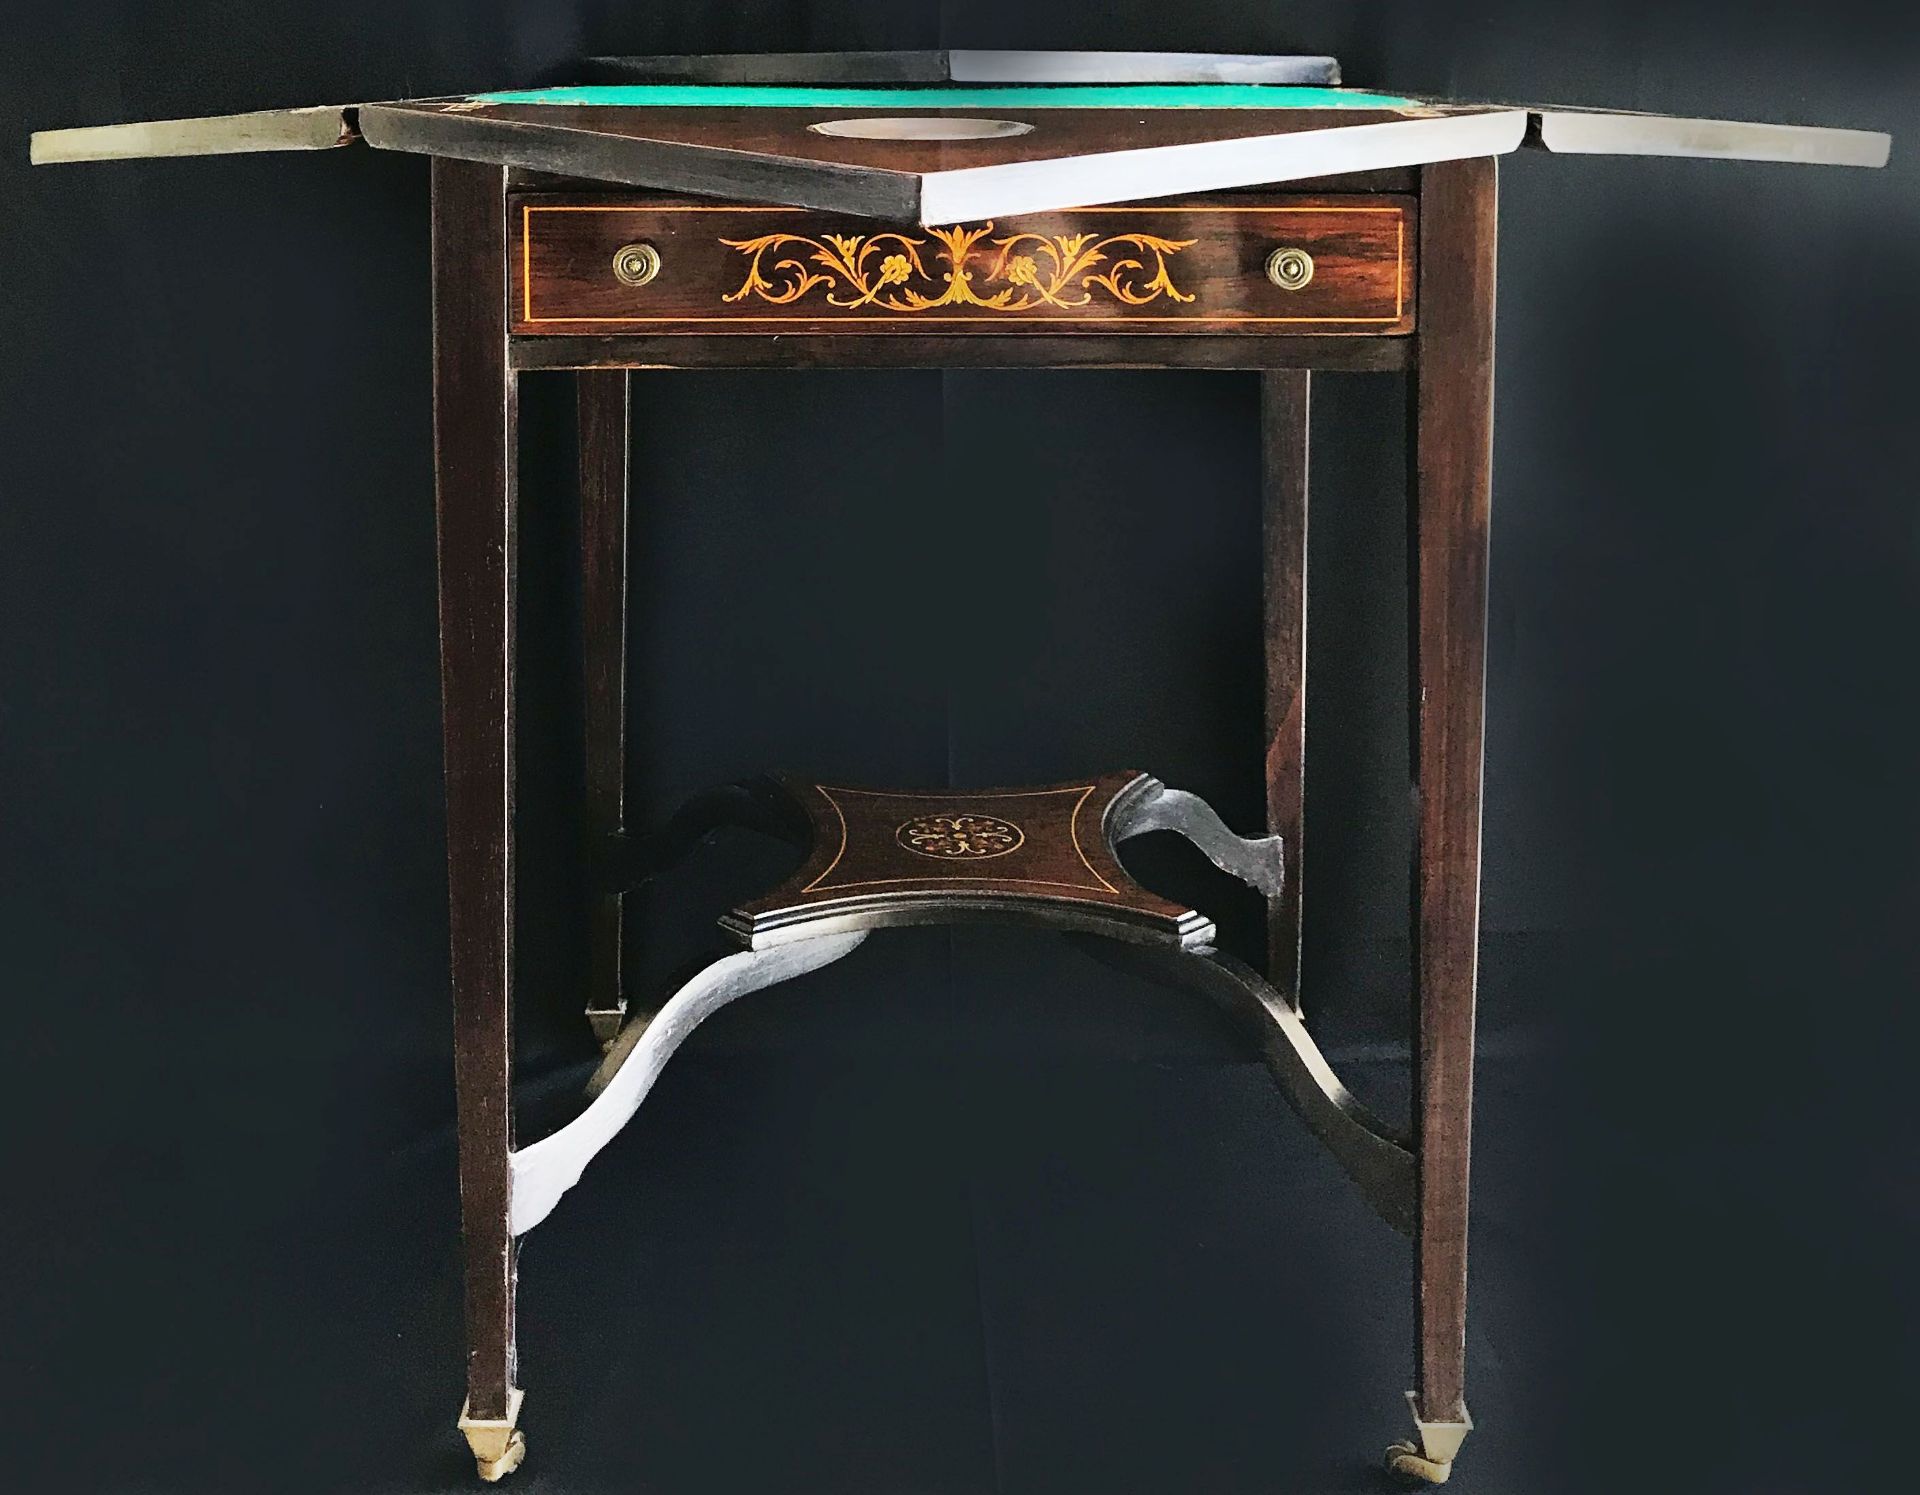 Spieltisch, England, um 1900, Mahagoni und Palisander, massiv und furniert, mit Intarsien-